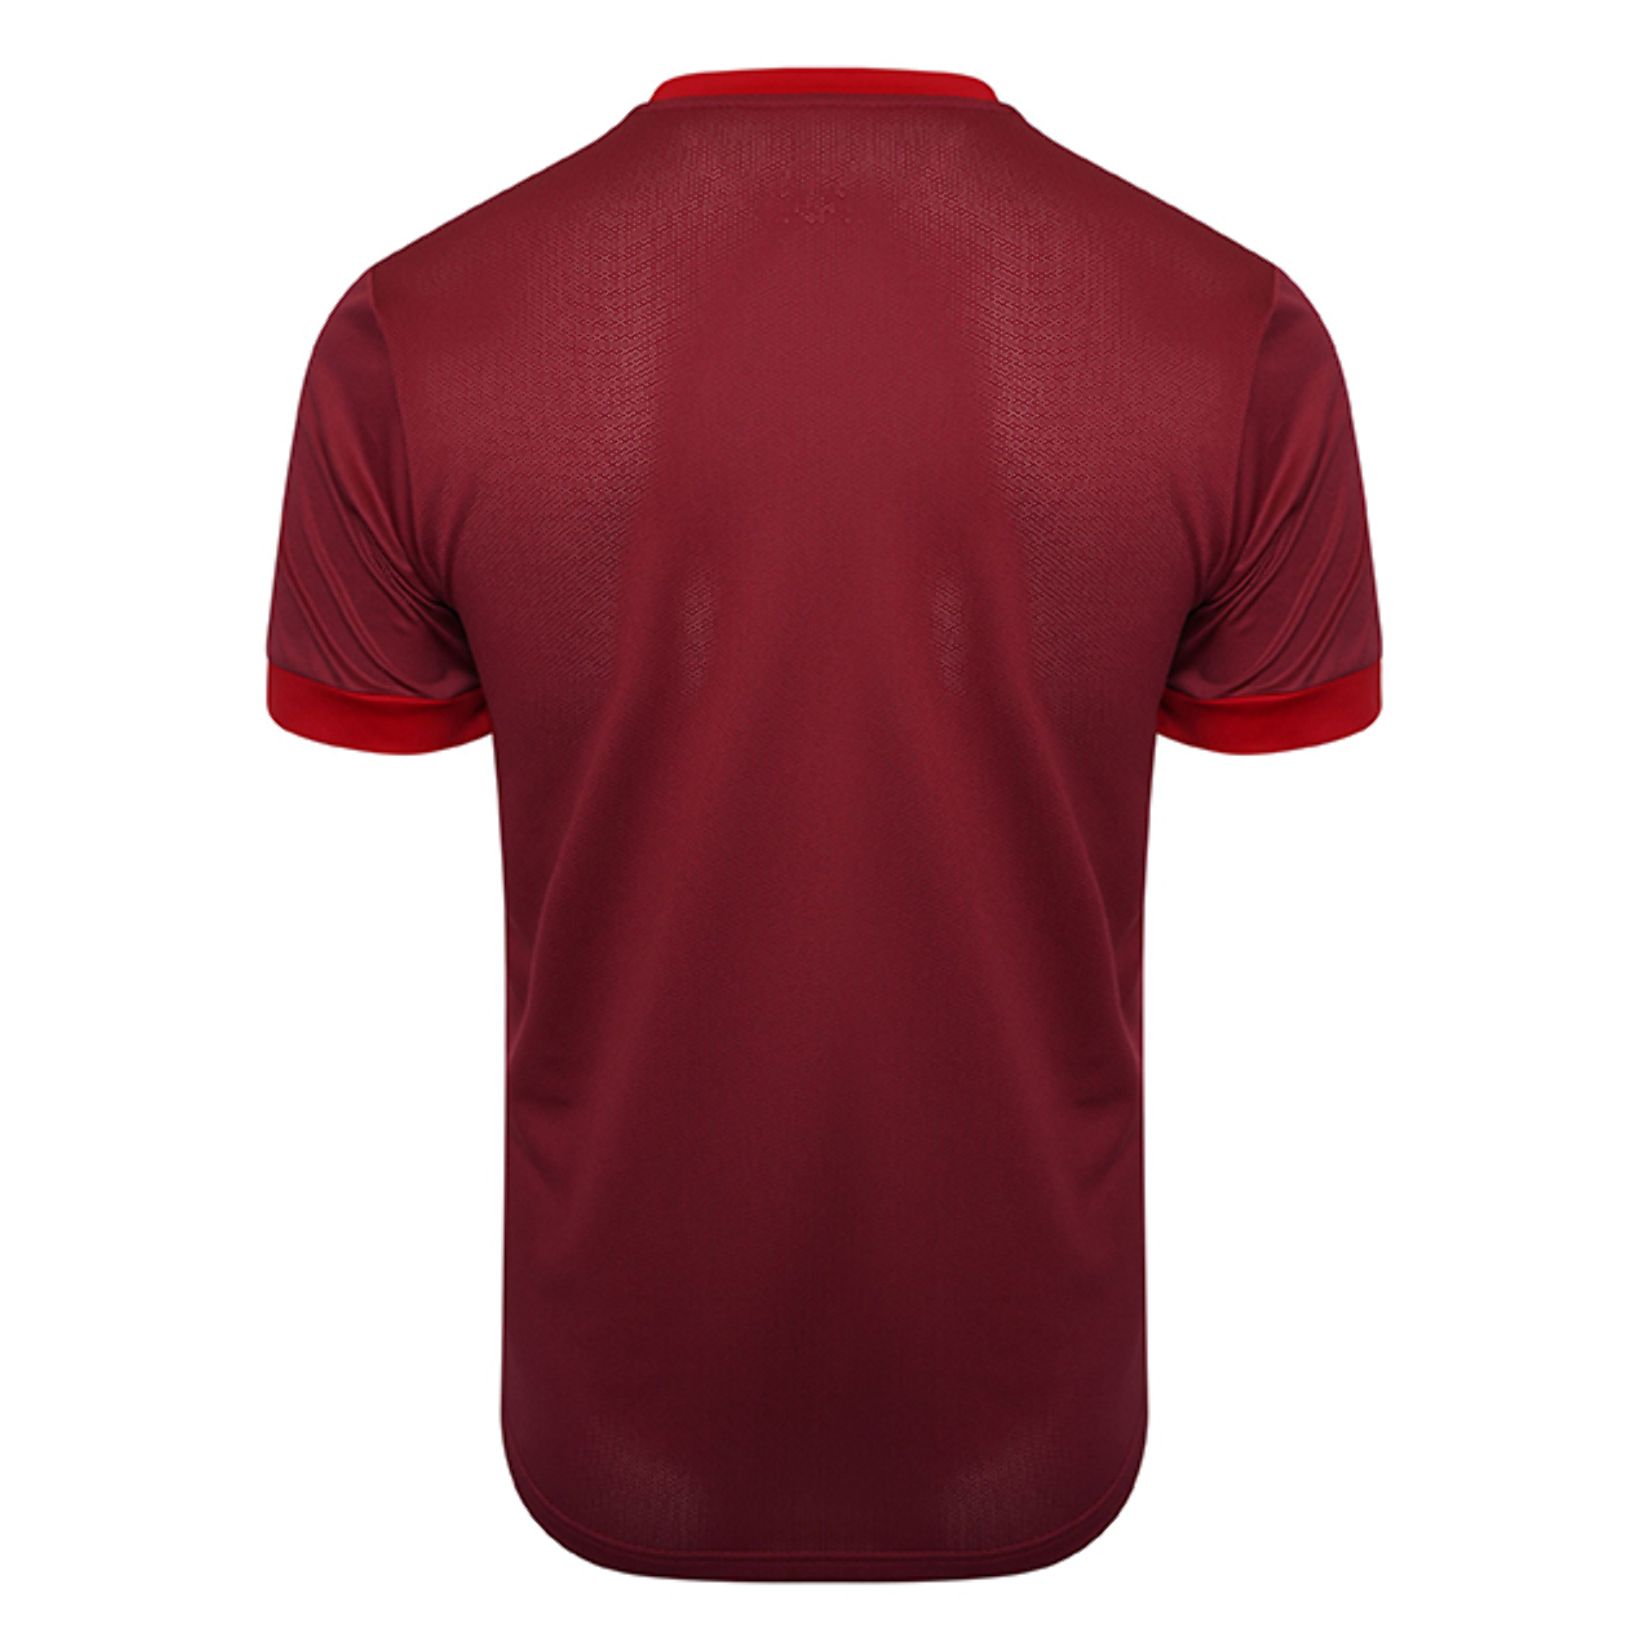 Puma Goal Short Sleeve Jersey